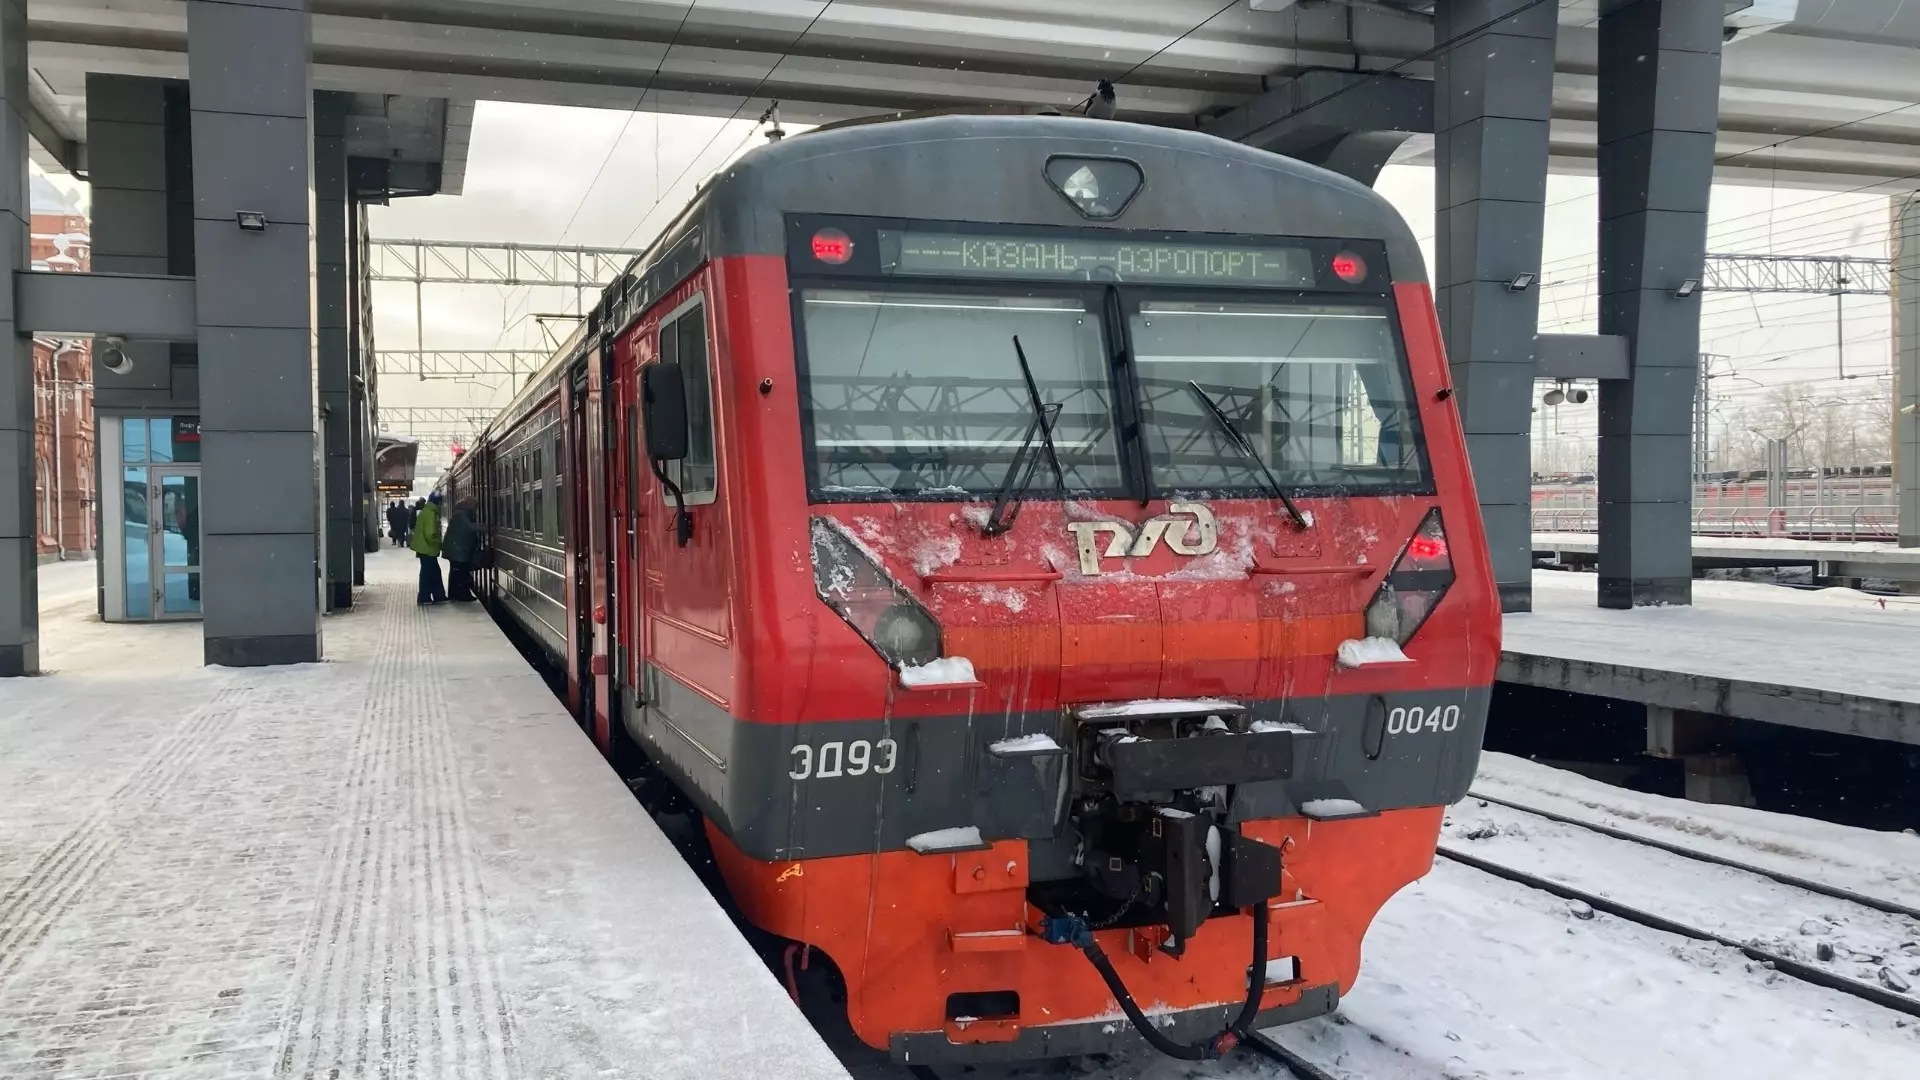 Прокуратура проводит проверку из-за столкновения поезда и снегохода в Казани